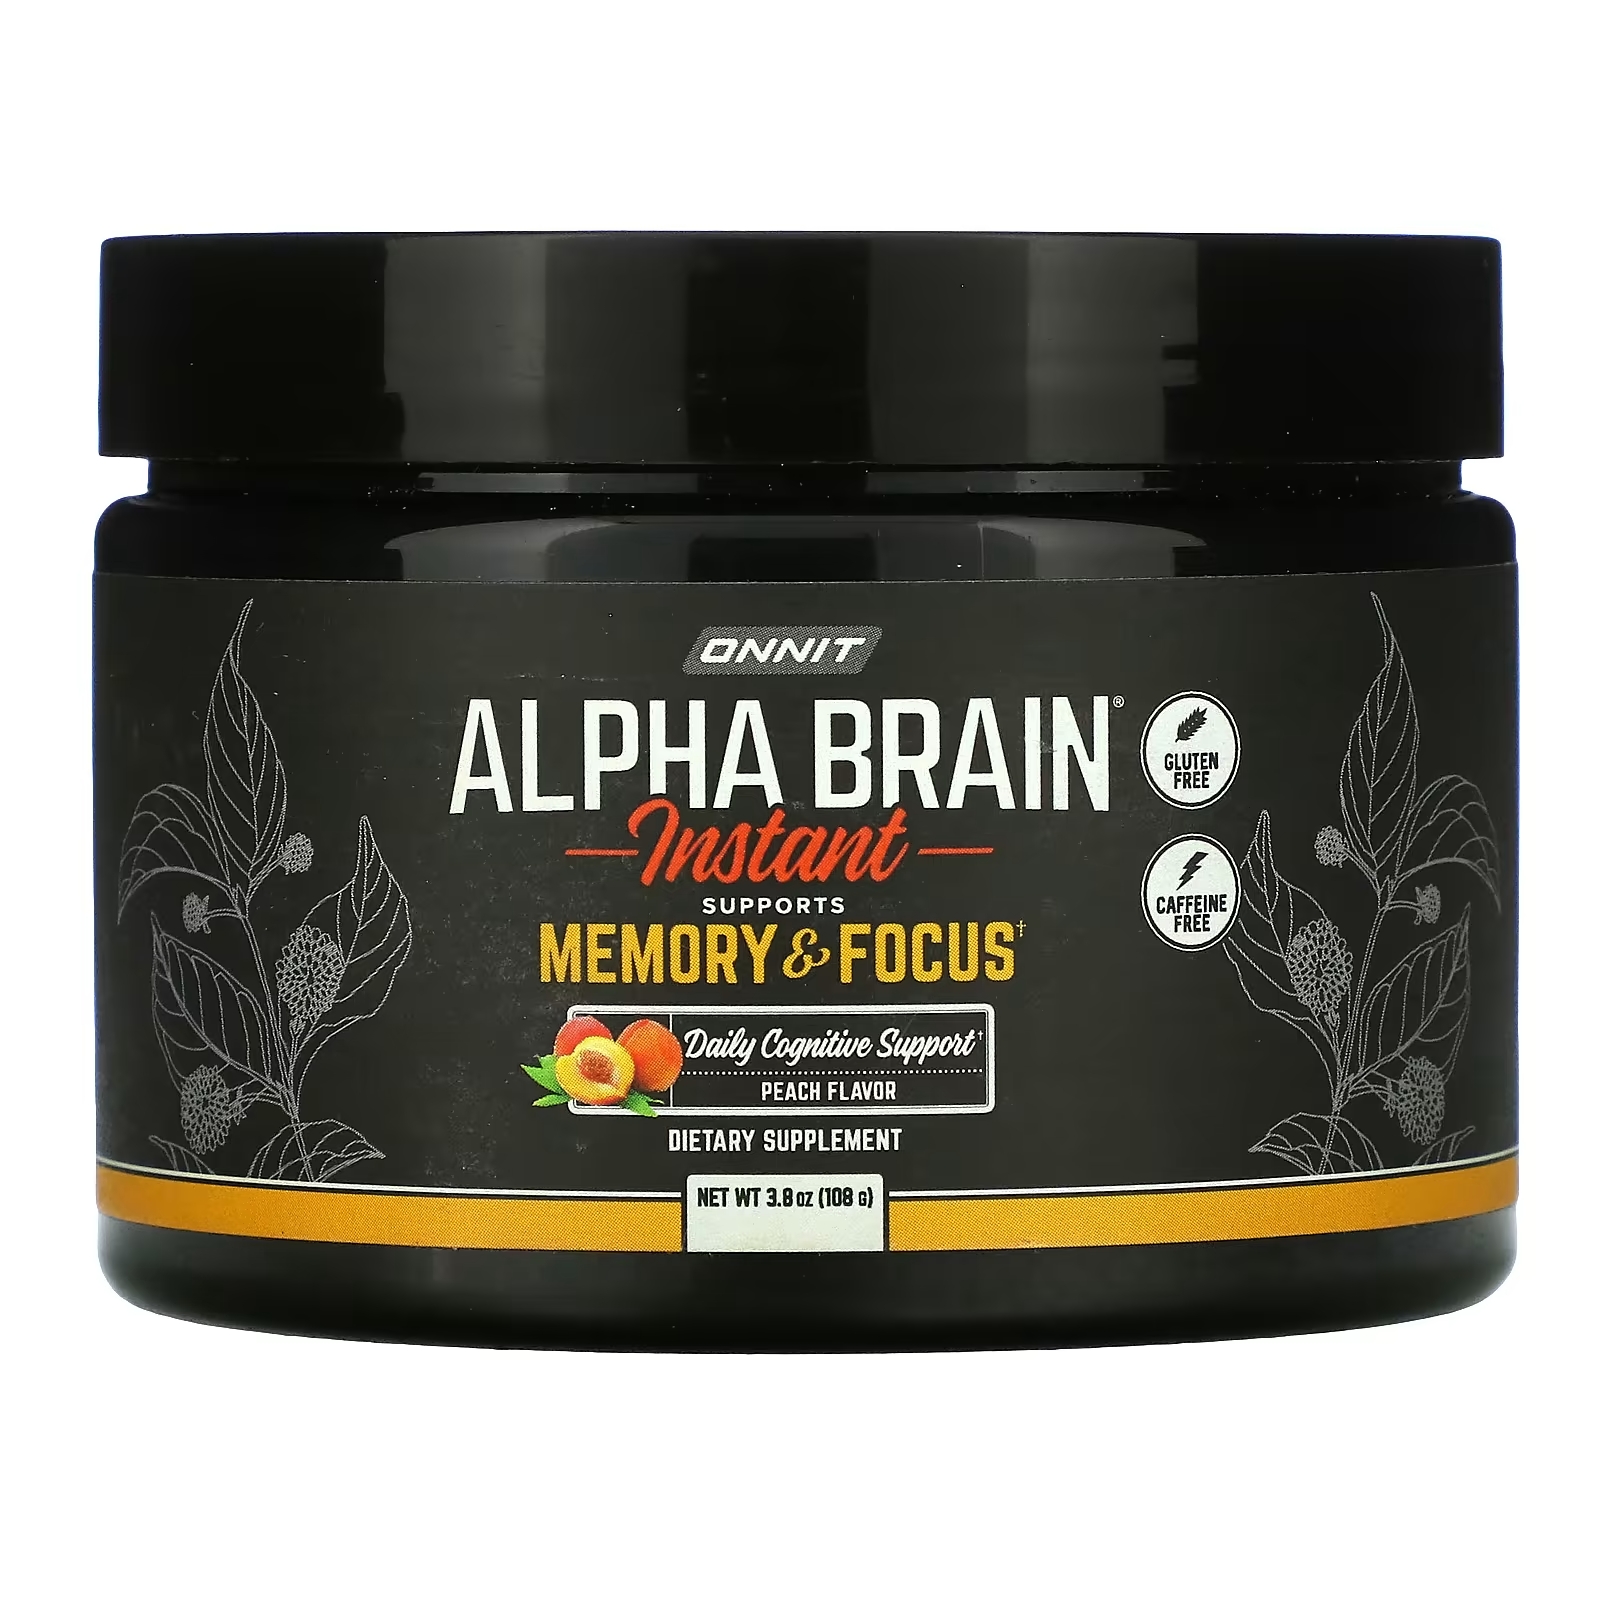 Onnit Alpha Brain Instant для памяти и концентрации внимания персик, 108 г комплекс для концентрации внимания и памяти urban formula brain activator 40